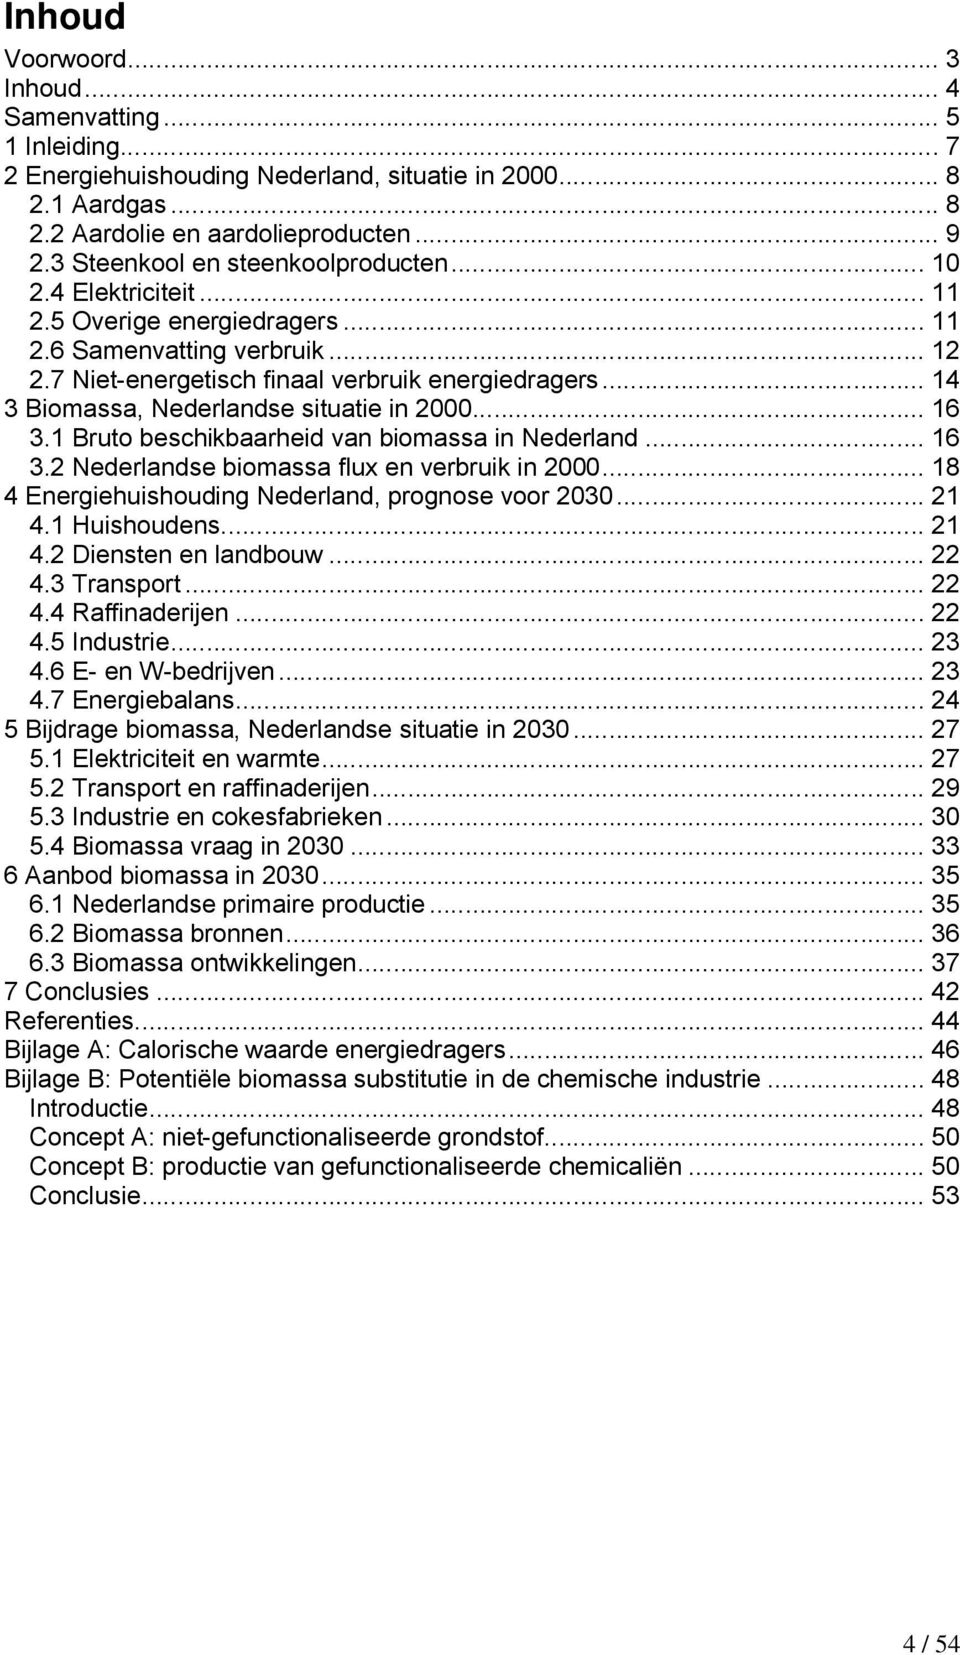 .. 14 3 Biomassa, Nederlandse situatie in 2000... 16 3.1 Bruto beschikbaarheid van biomassa in Nederland... 16 3.2 Nederlandse biomassa flux en verbruik in 2000.